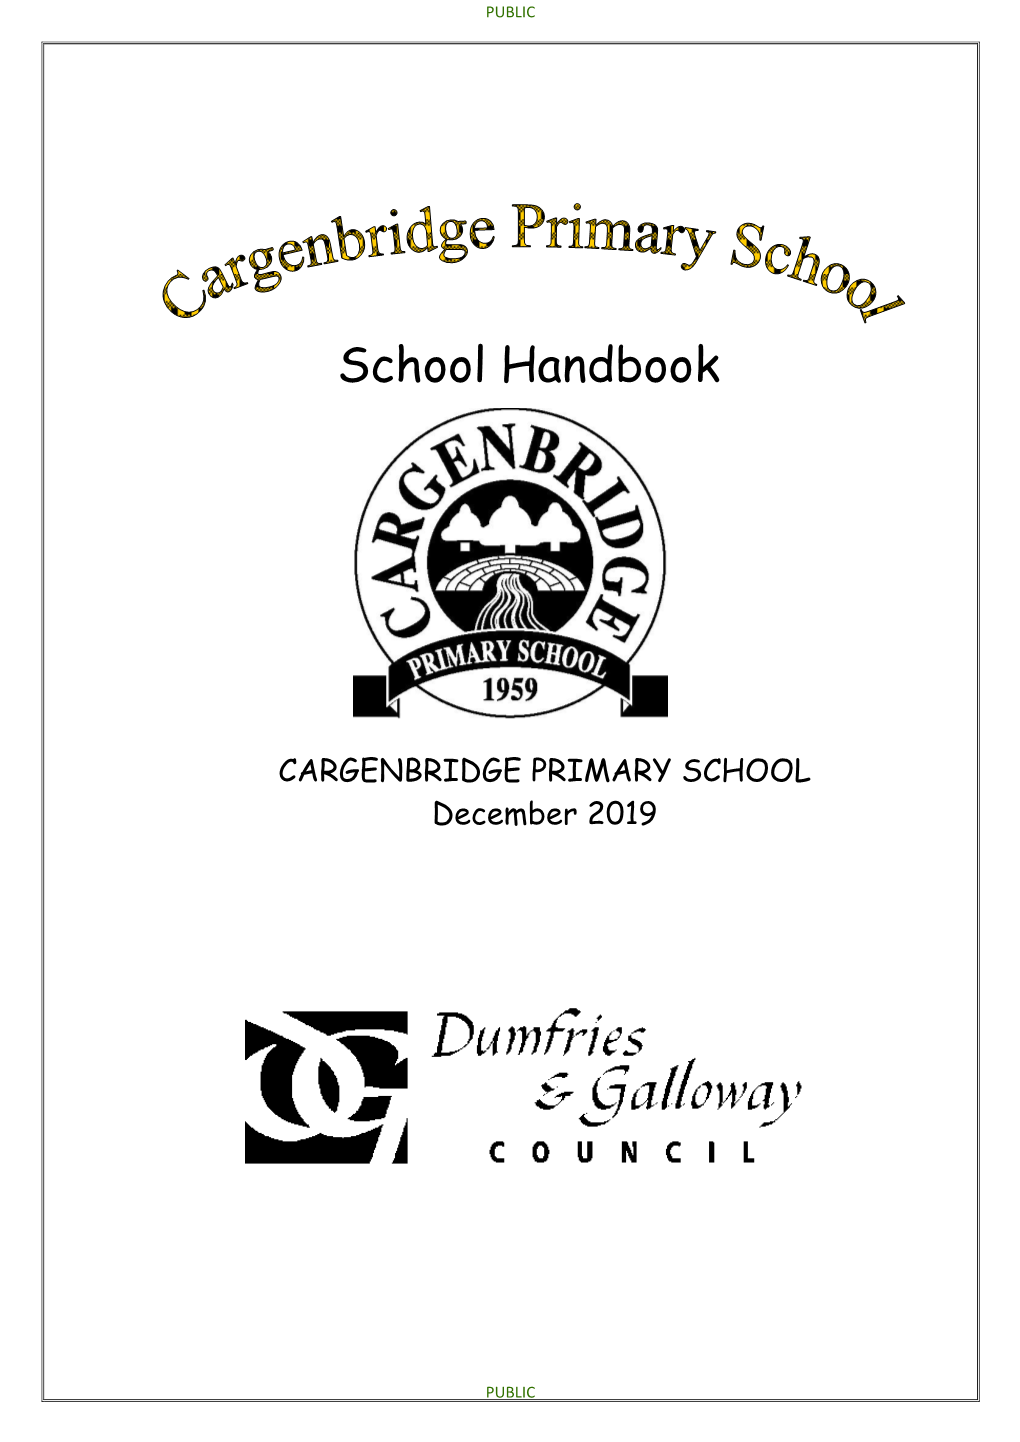 Download the Cargenbridge Primary School Handbook